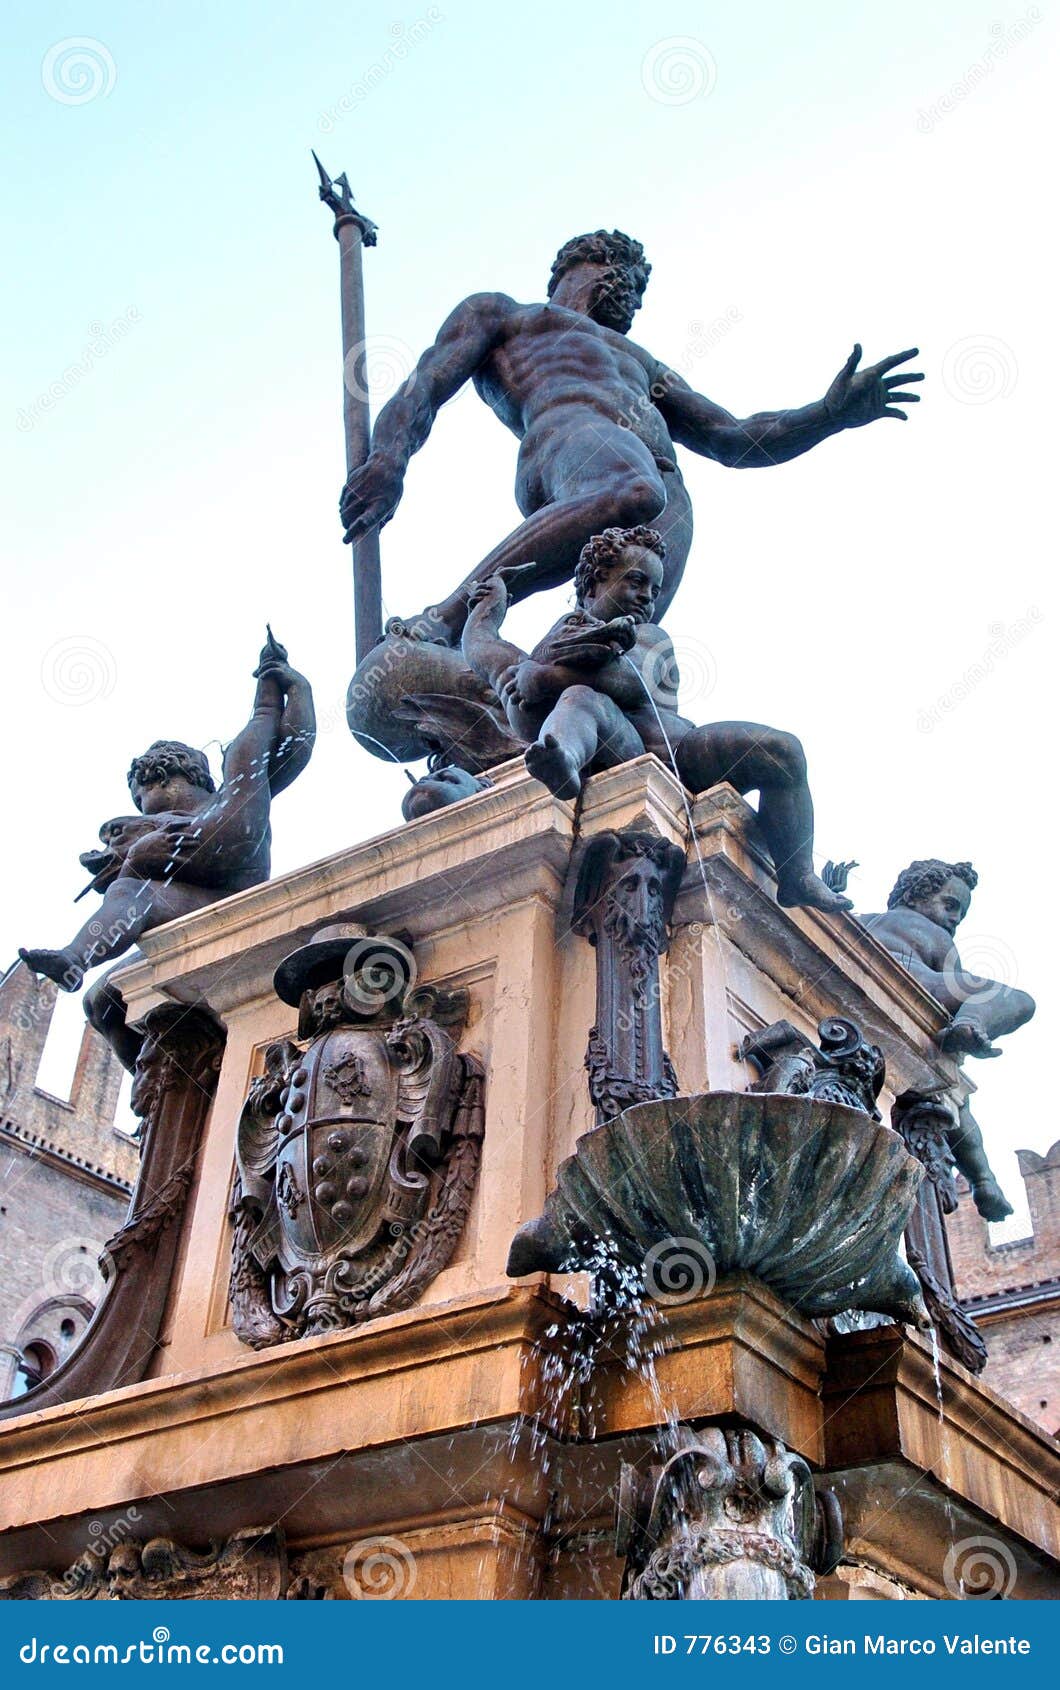 bologna - statue of neptune